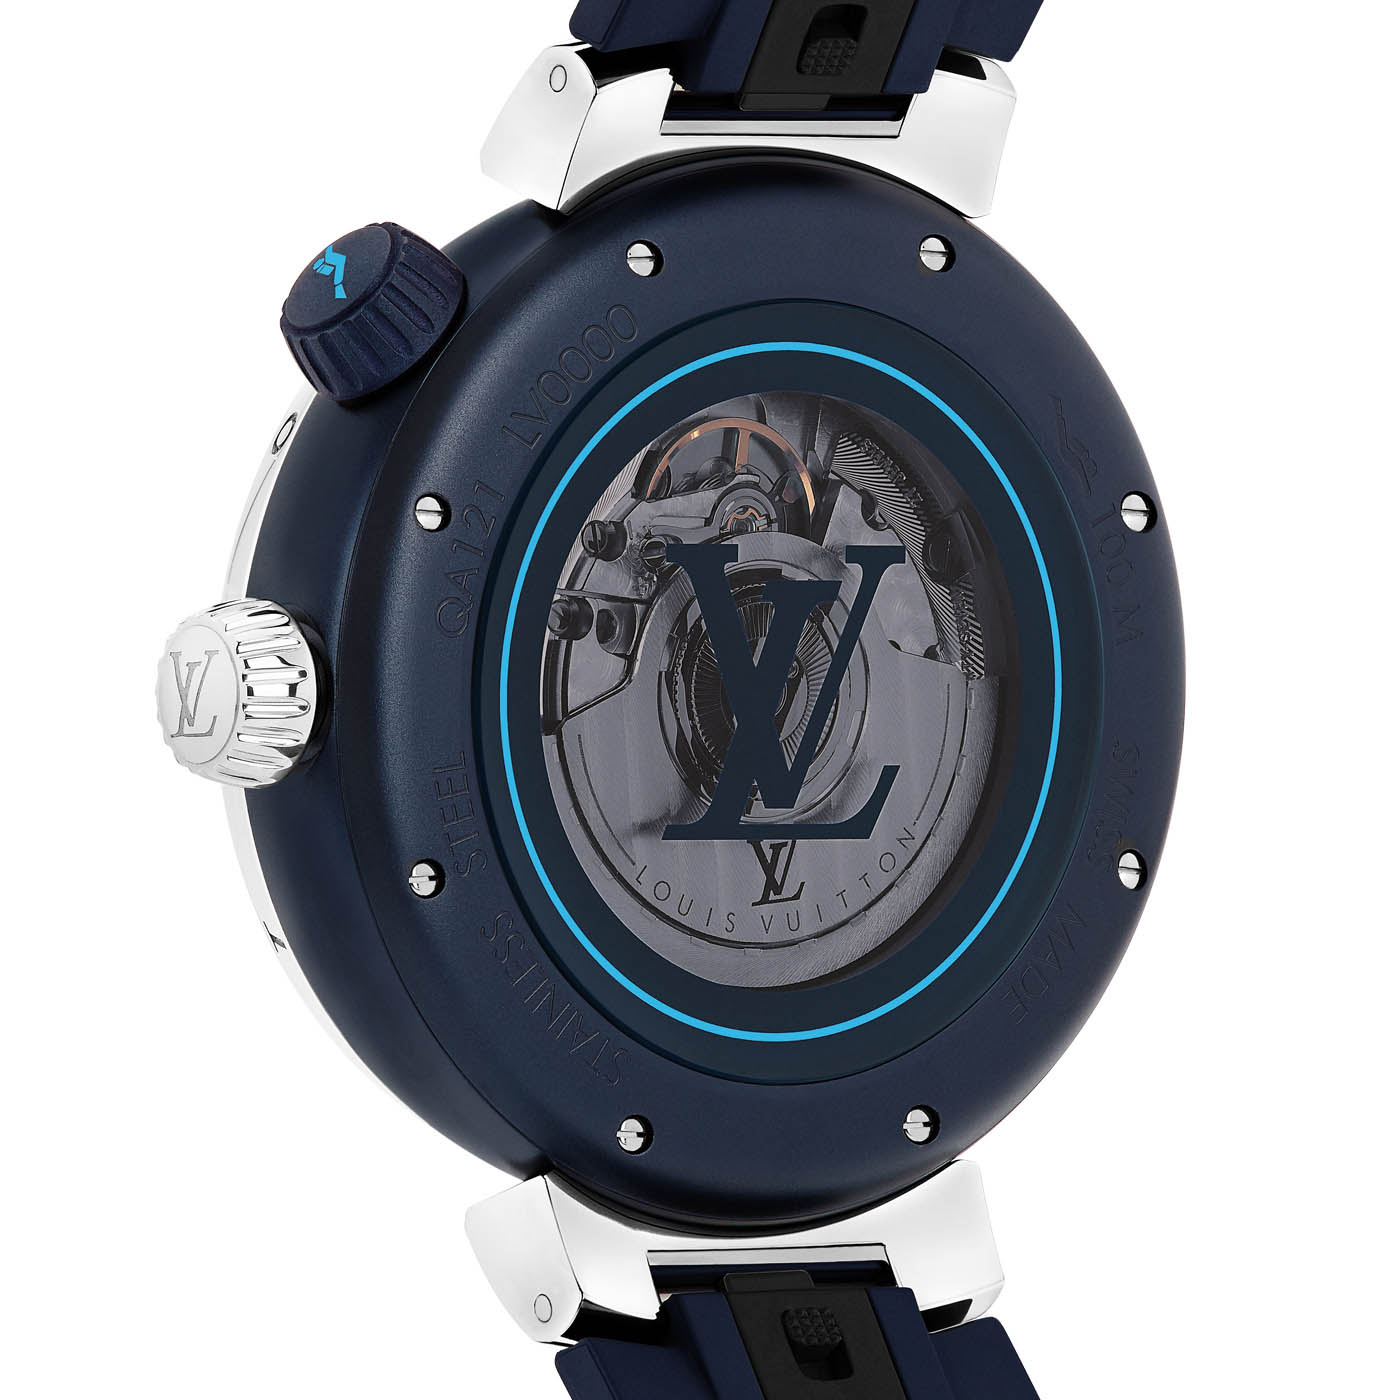 Watch Louis Vuitton Tambour Diving II Bleu  Tambour Diving II Steel -  Rubber Bracelet